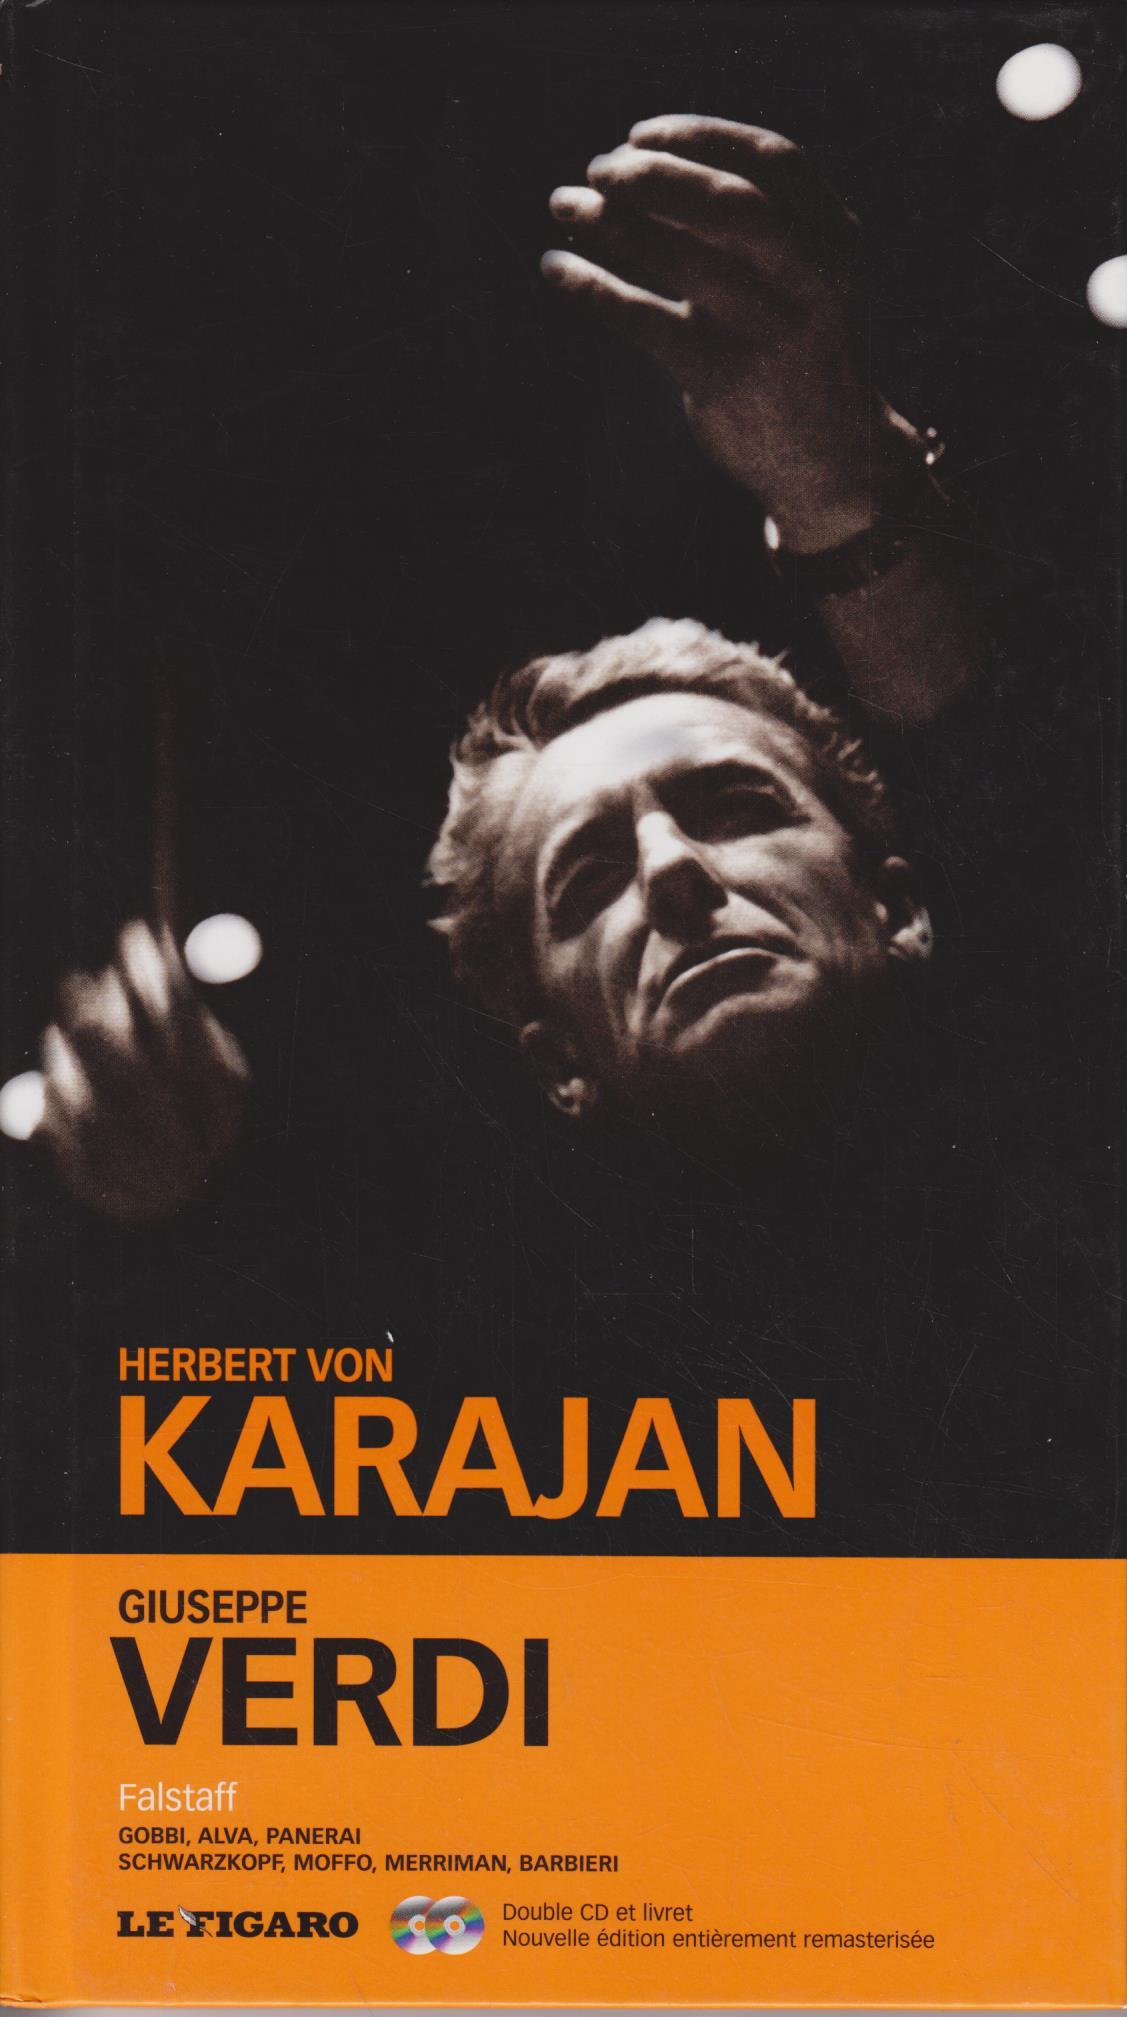 GIUSEPPE VERDI - FALSTAFF. DOUBLE CD-ROM ET LIVRET VOL 33 - Le, Figaro, Giuseppe Verdi und Herbert von Karajan